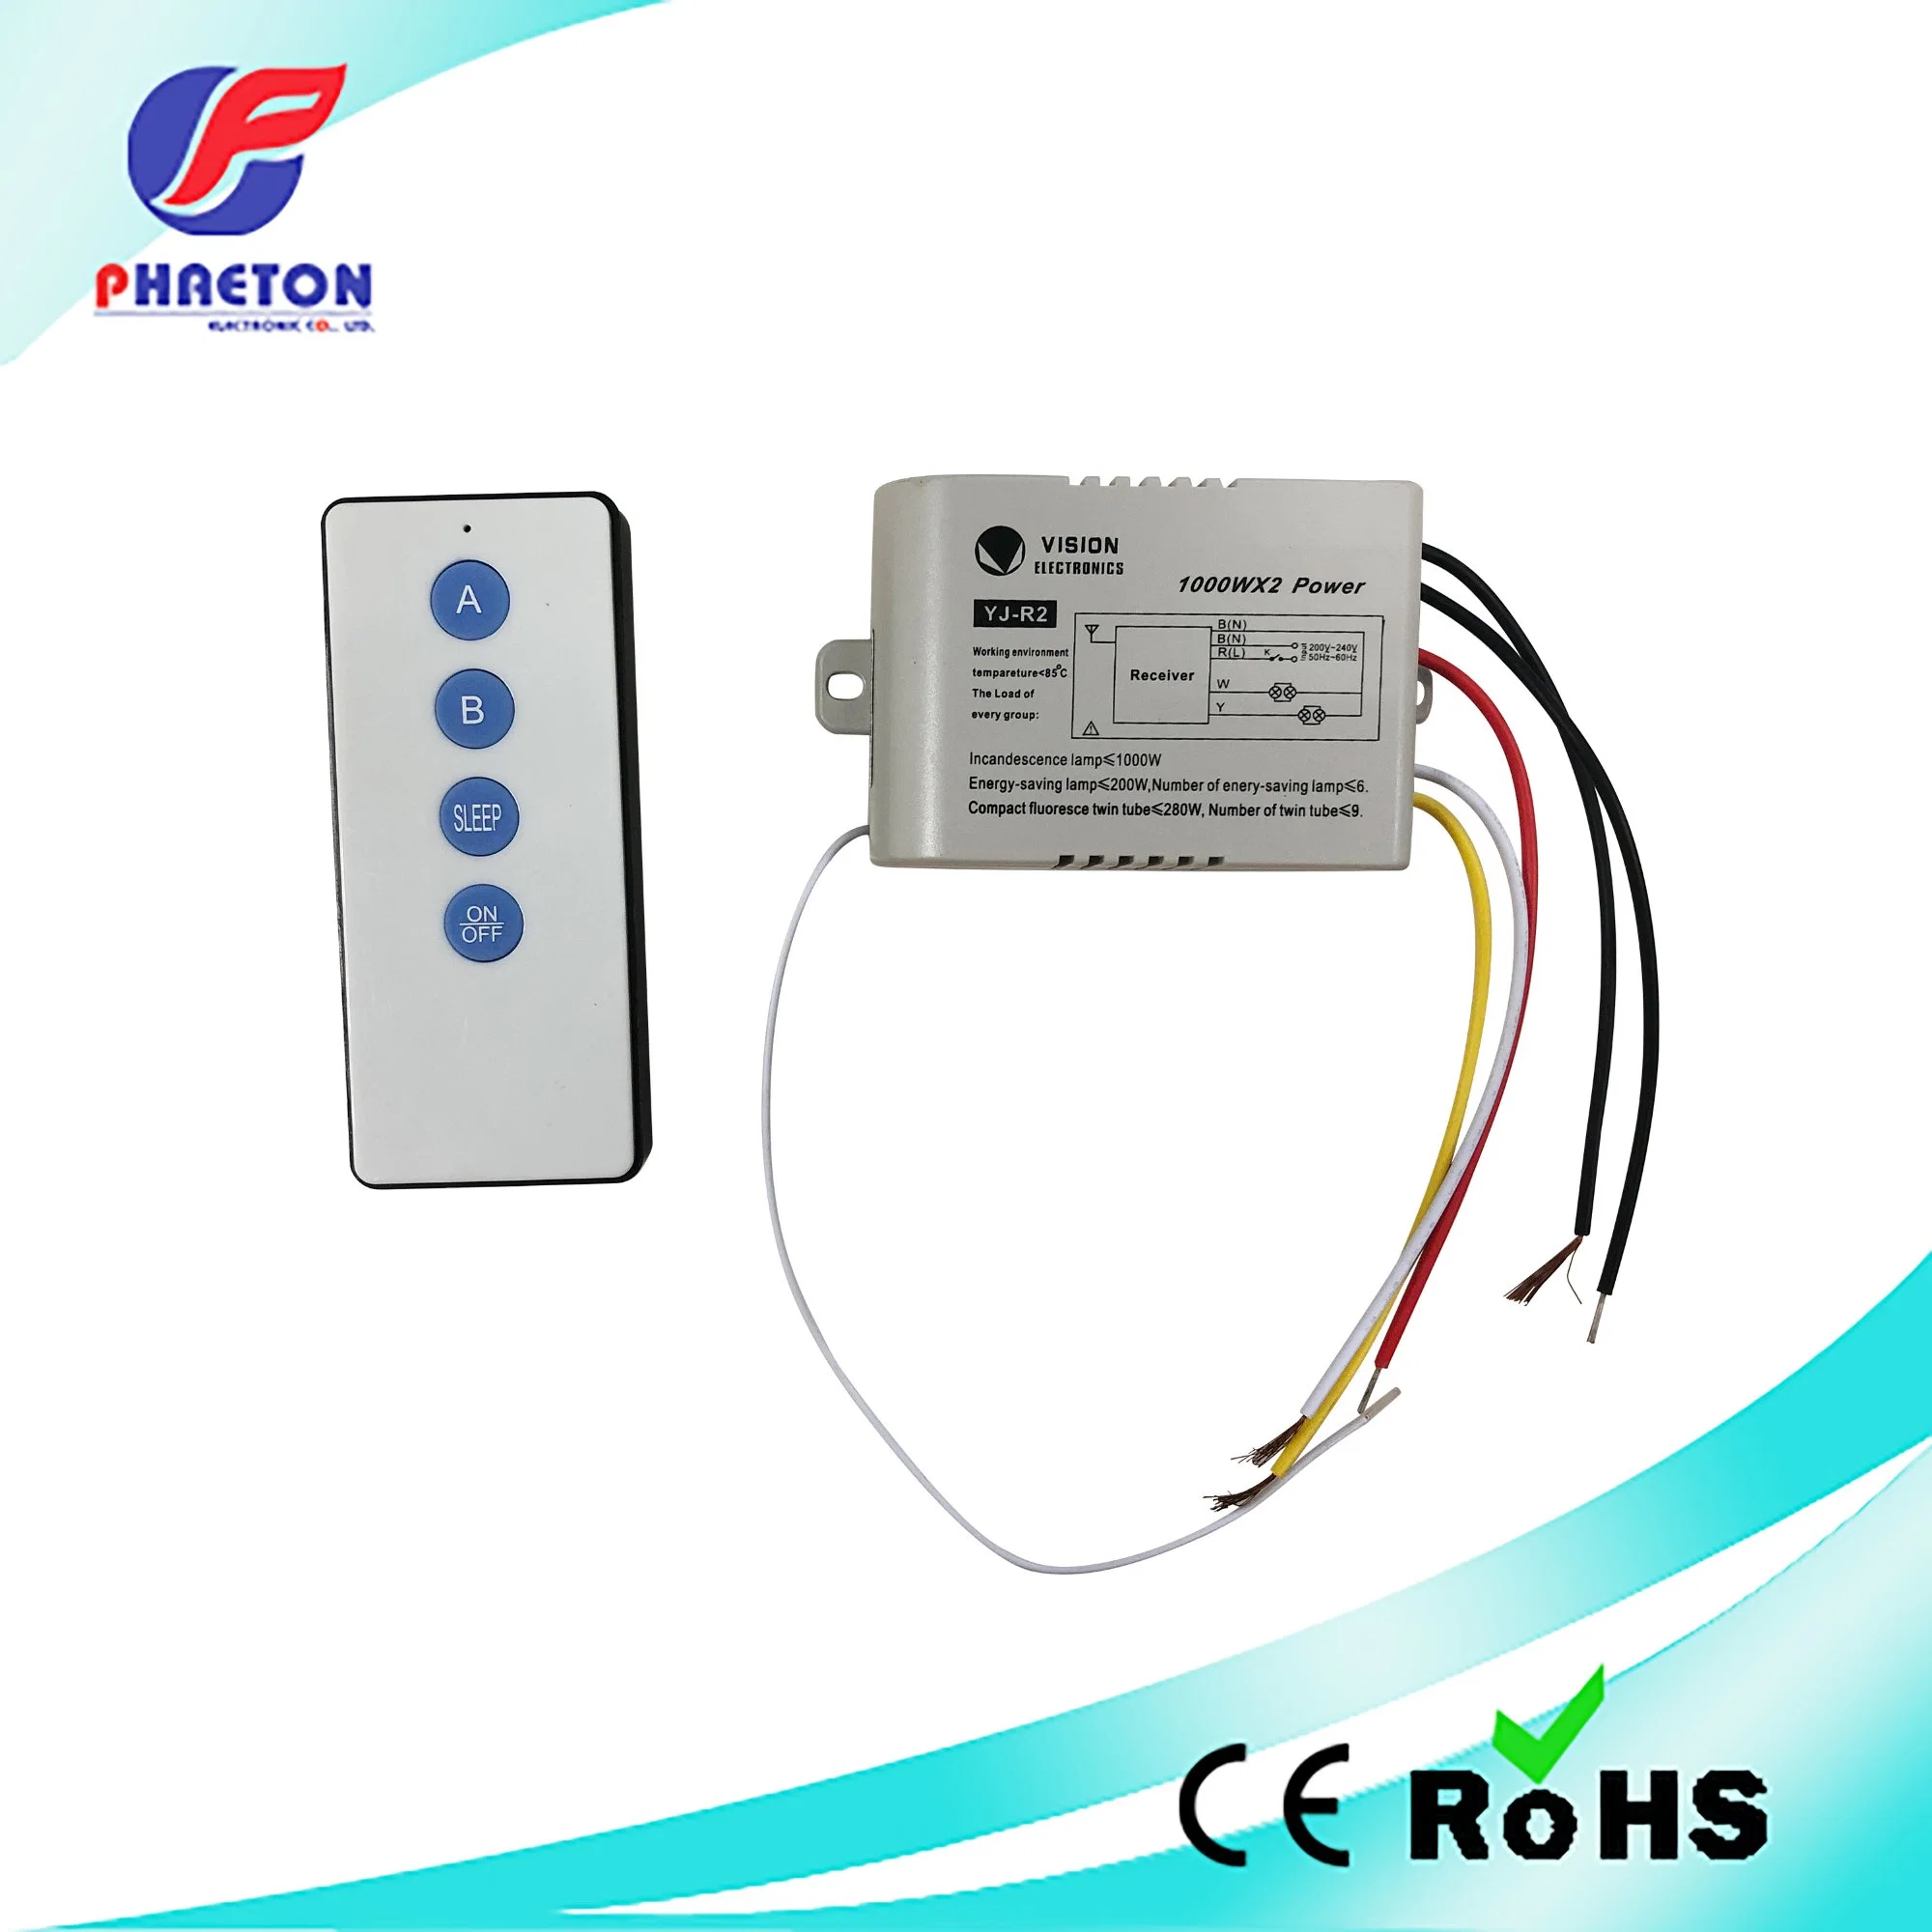 Home Use Universal Fan and Light Wireless Digital Remote Control (استخدام المروحة العامة وجهاز التحكم عن بُعد اللاسلكي الرقمي الخفيف المفتاح CE